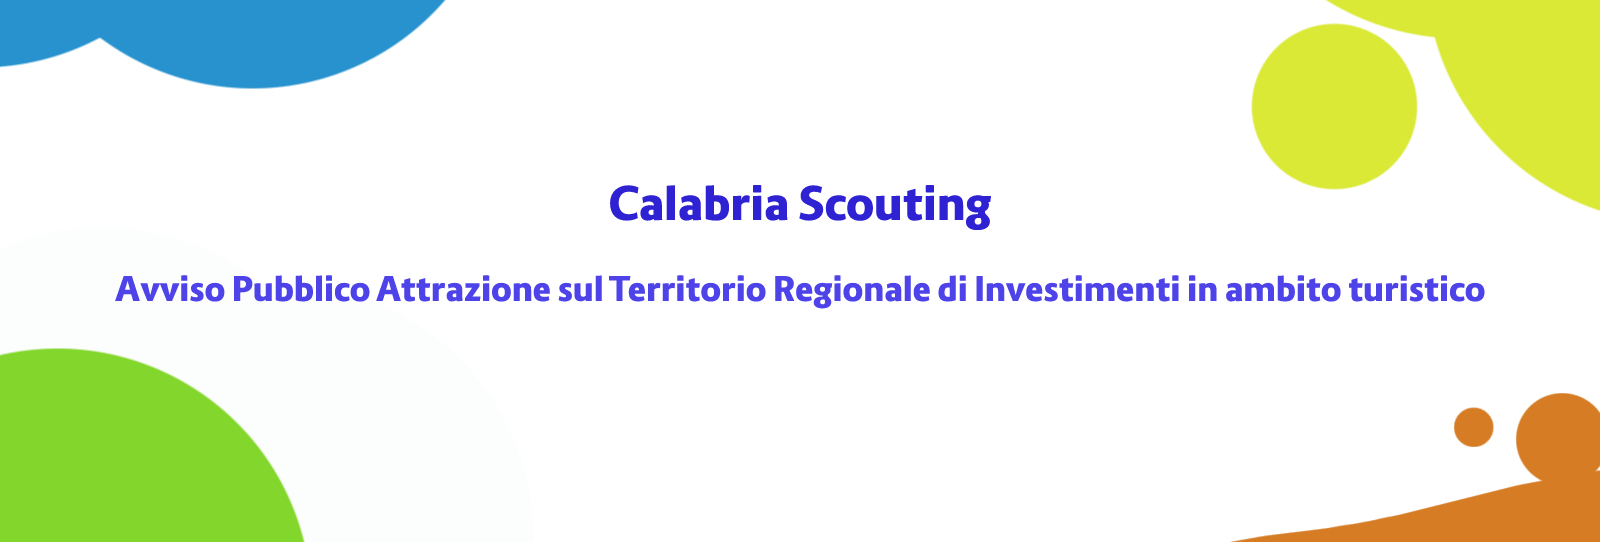 Calabria Scouting: Avviso Pubblico Attrazione sul Territorio Regionale di Investimenti in ambito turistico